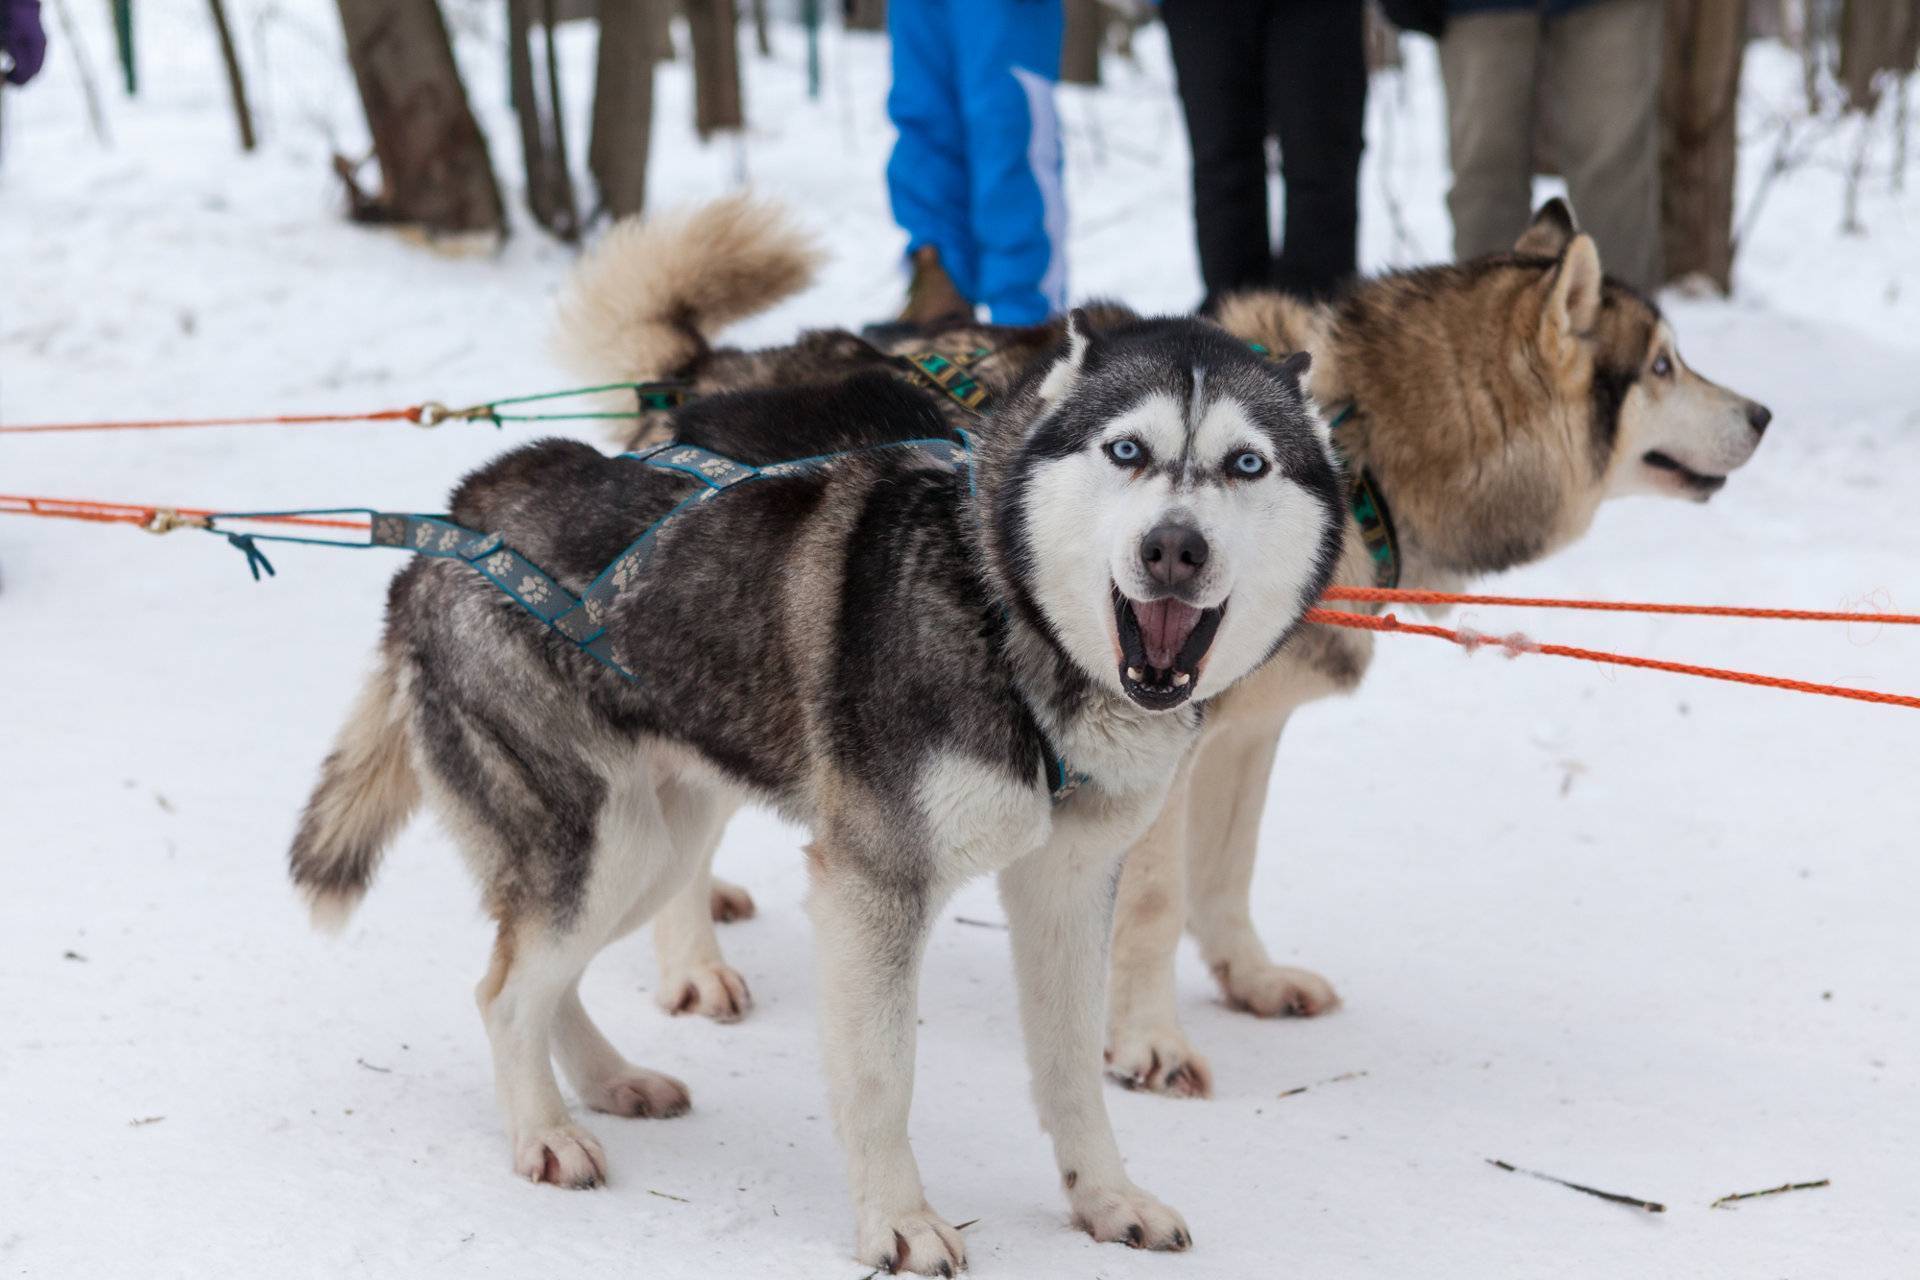 Сибирский хаски: фото, описание породы собак, отзывы и характер